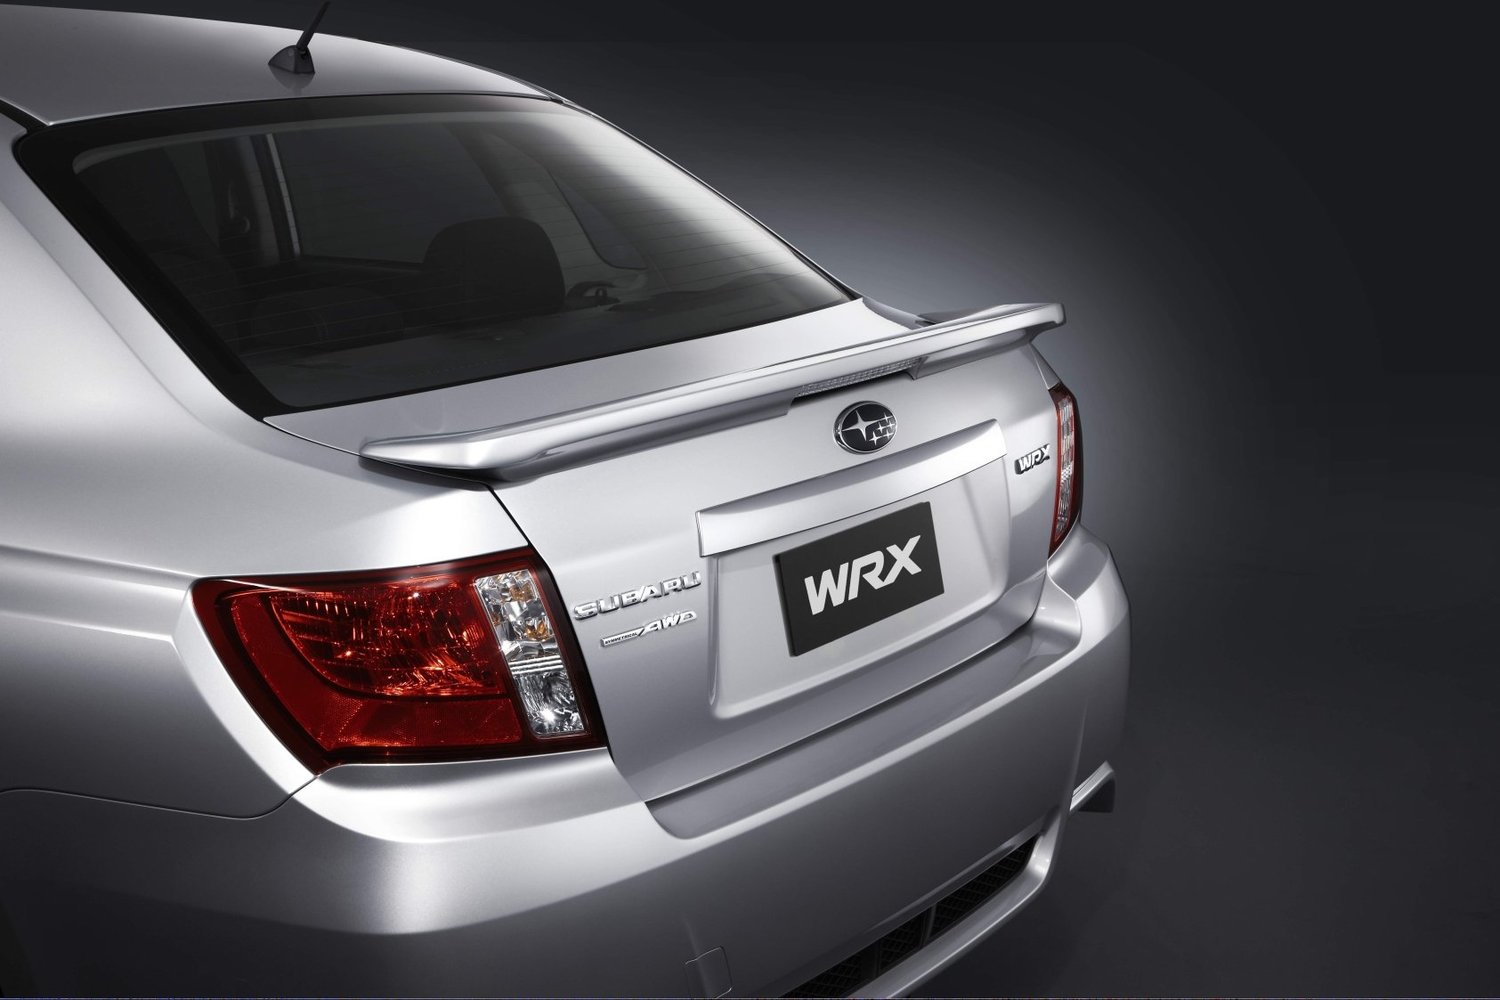 седан Subaru Impreza WRX 2011 - 2014г выпуска модификация 2.5 MT (224 л.с.) 4×4